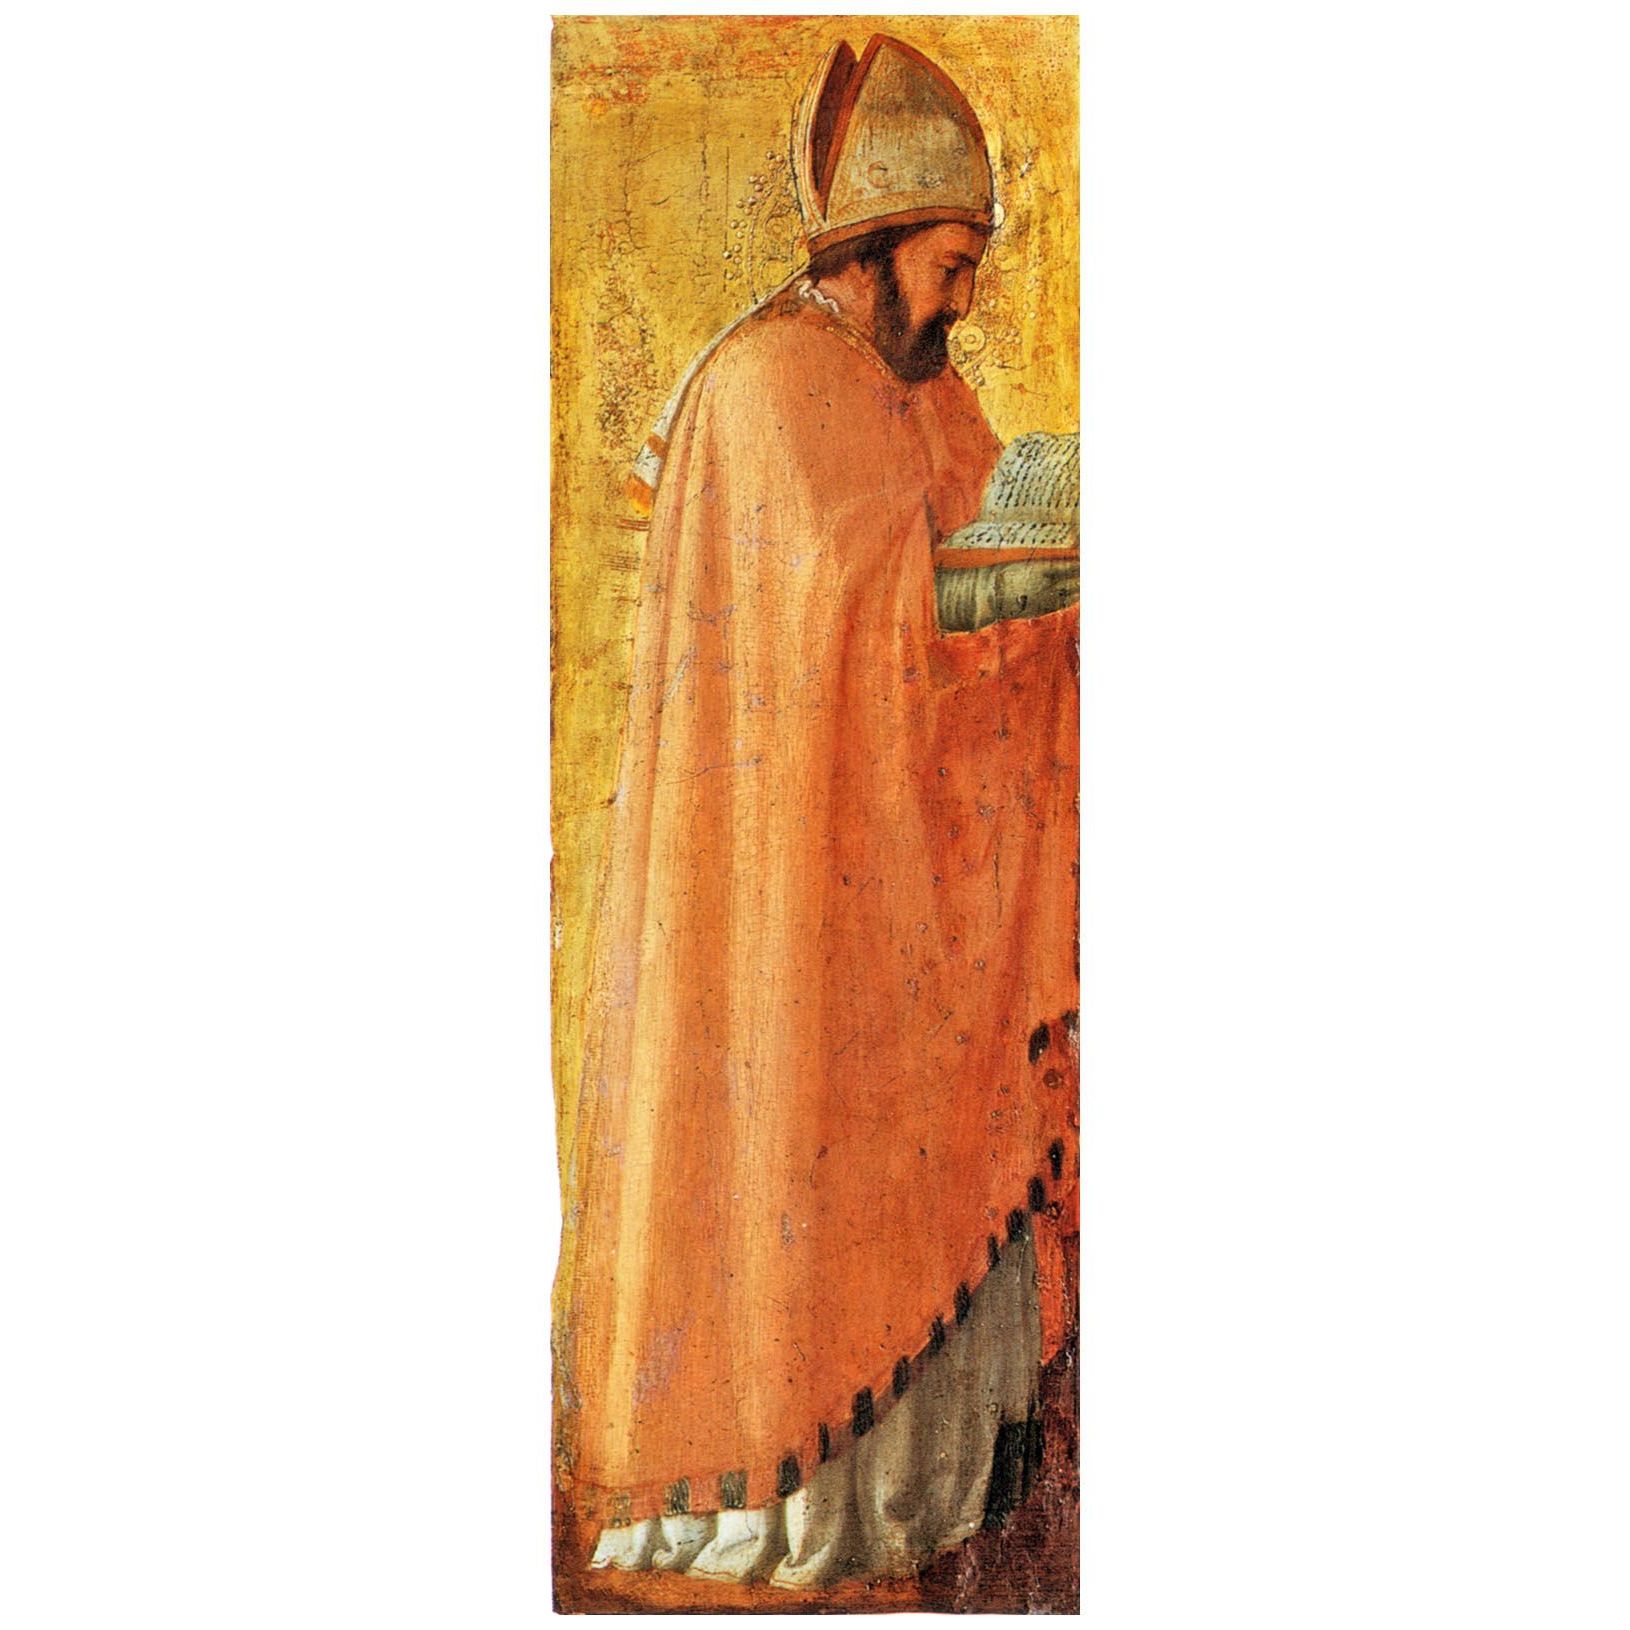 Мазаччо. Св. Августин. 1426. Национальная галерея, Берлин